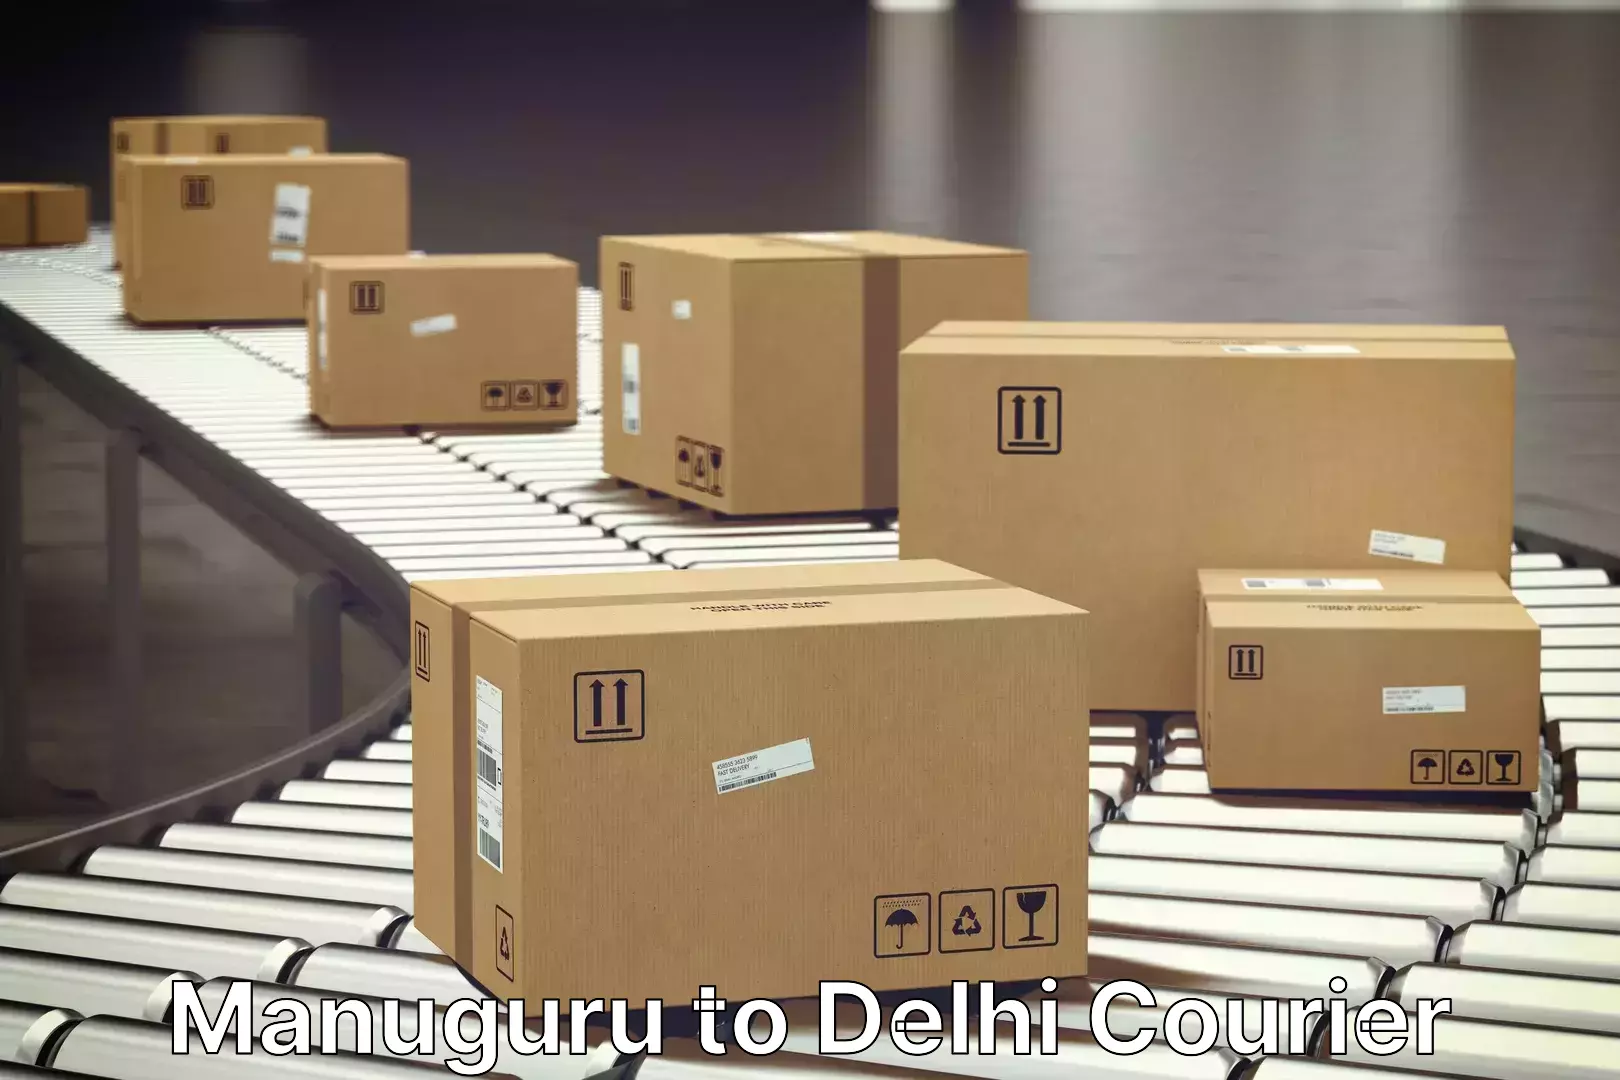 Furniture transport experts Manuguru to Delhi